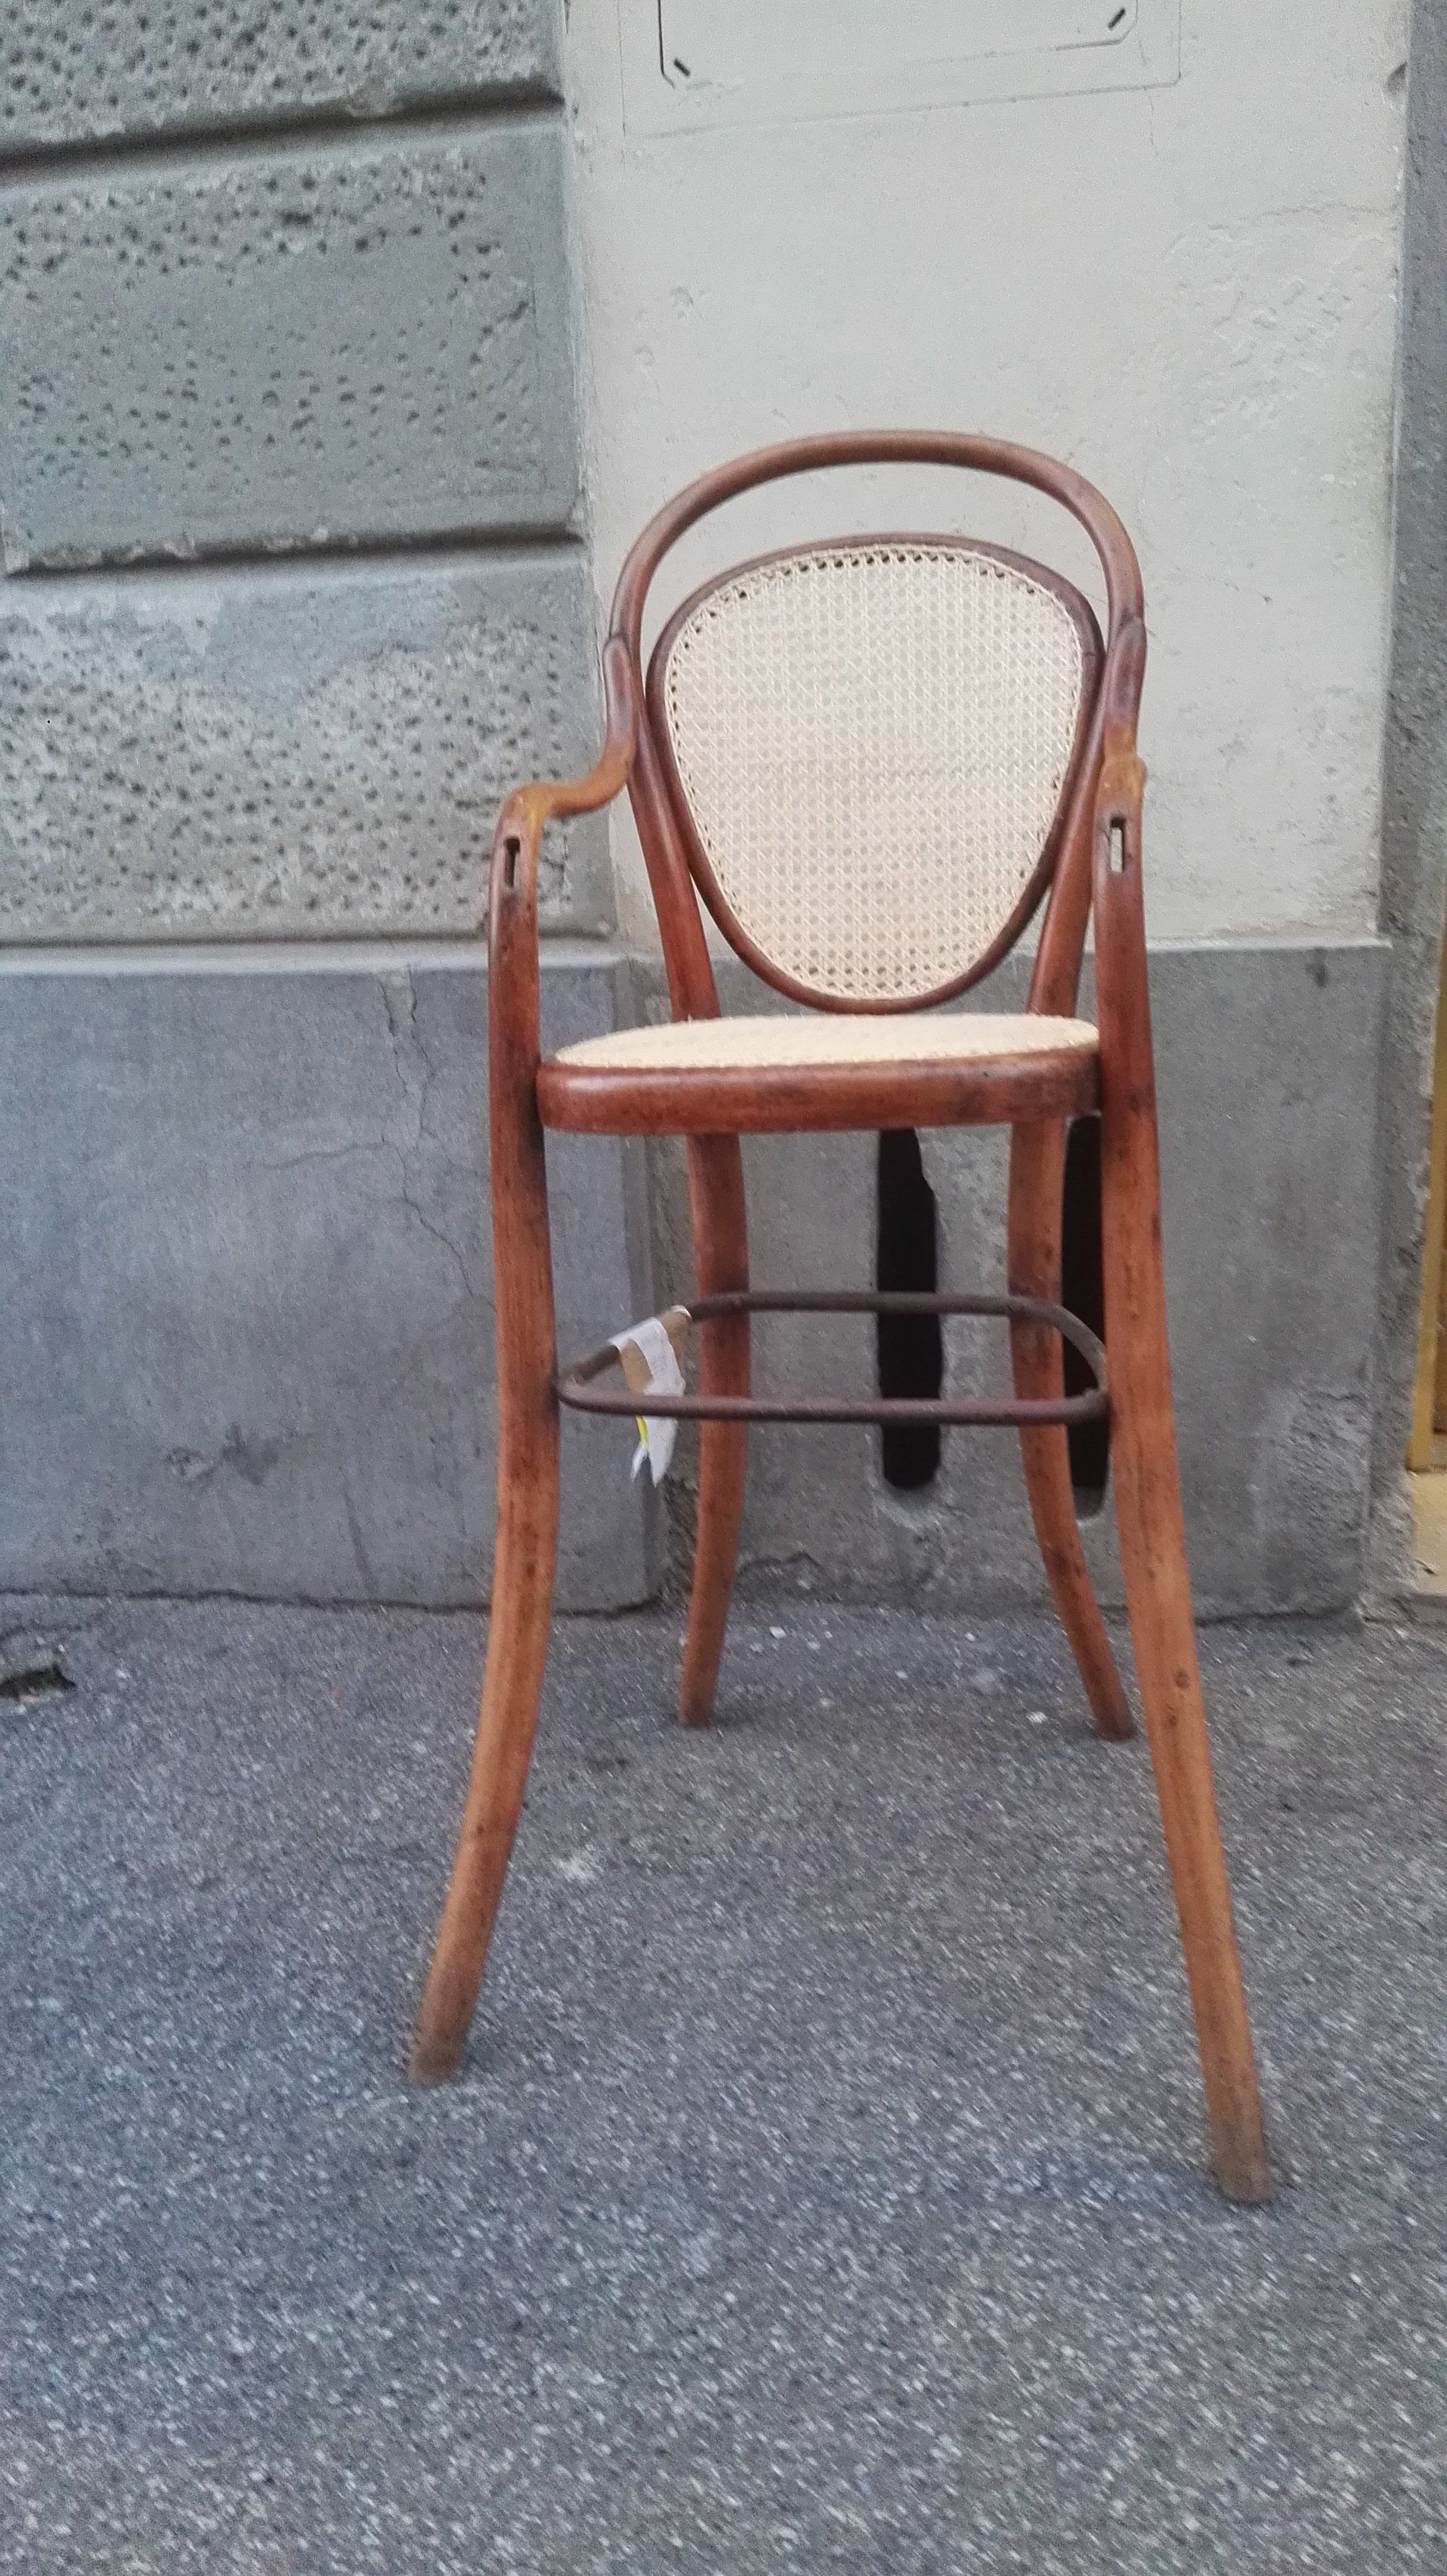 particolare sedia di legno con schienale e seduta in paglia intrecciata in piccole trame a rete